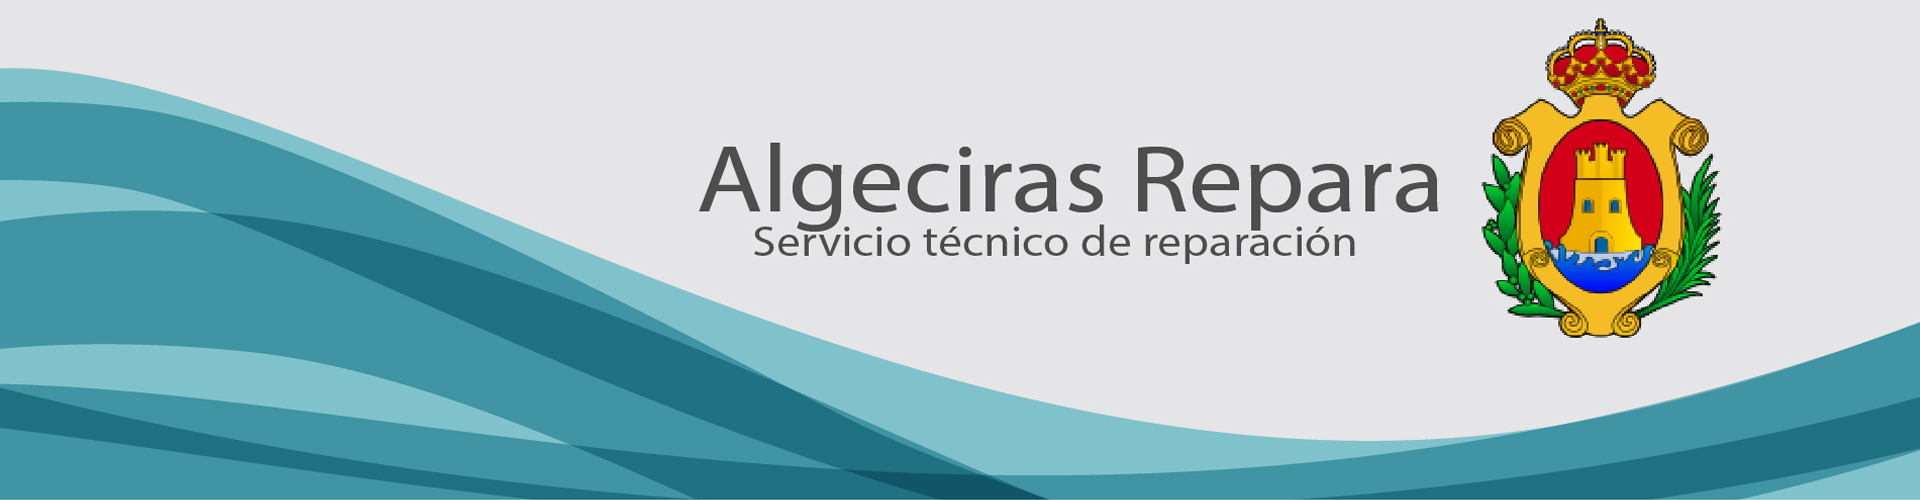 Bienvenido a Algeciras Repara